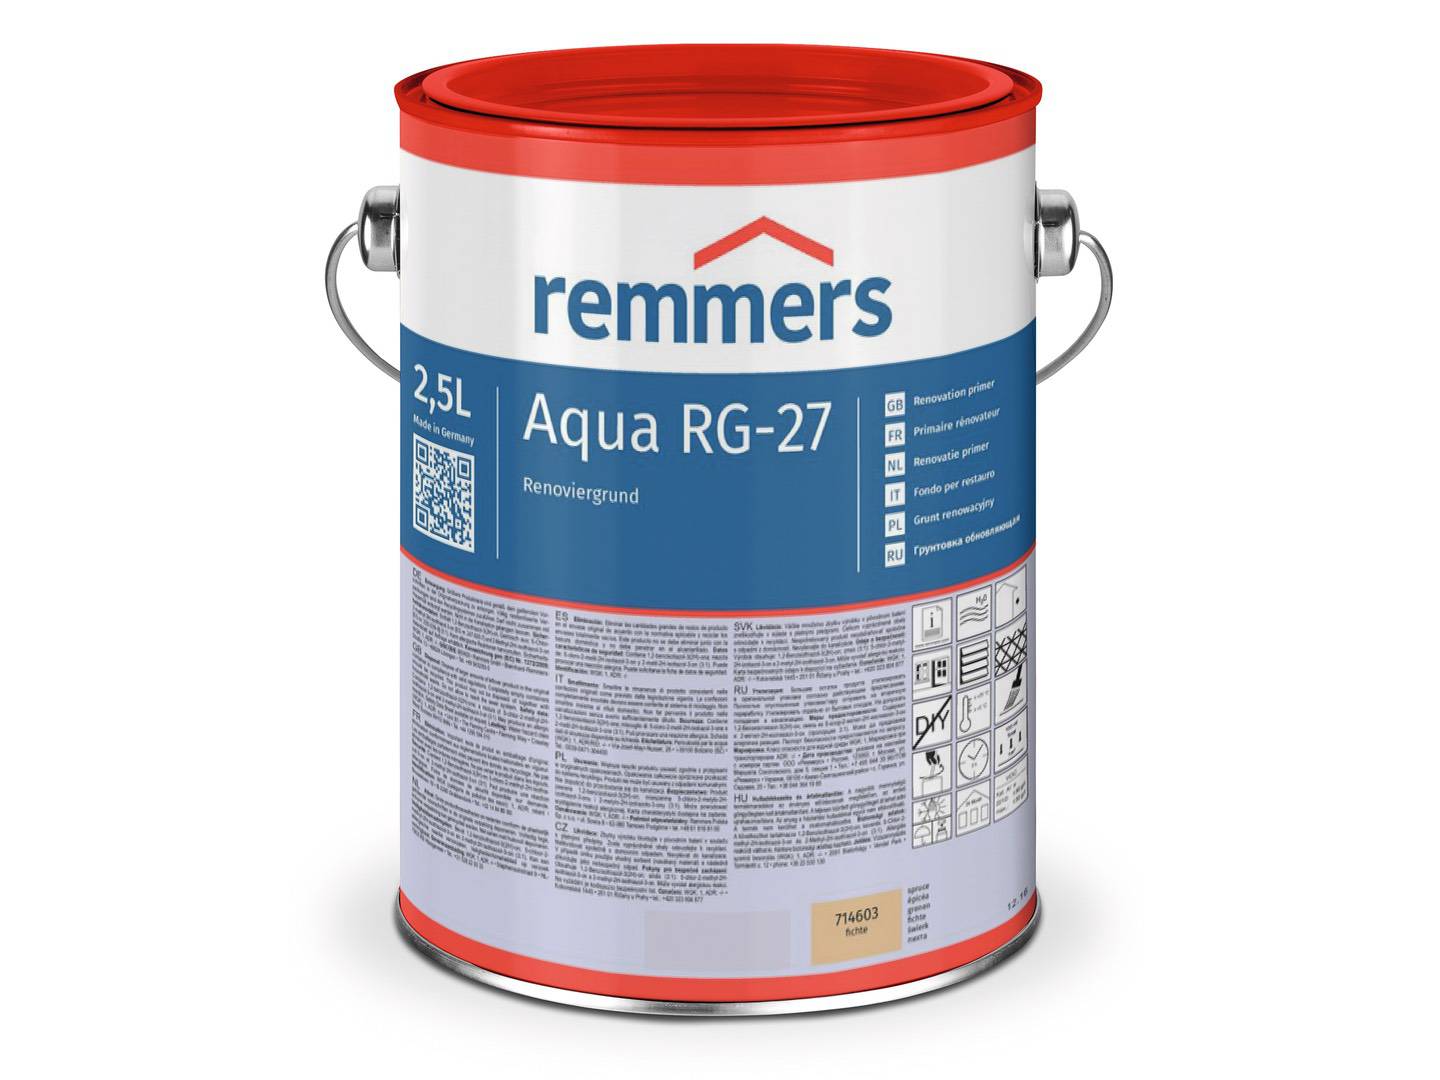 REMMERS Aqua RG-27-Renoviergrund fichte 2,50 l